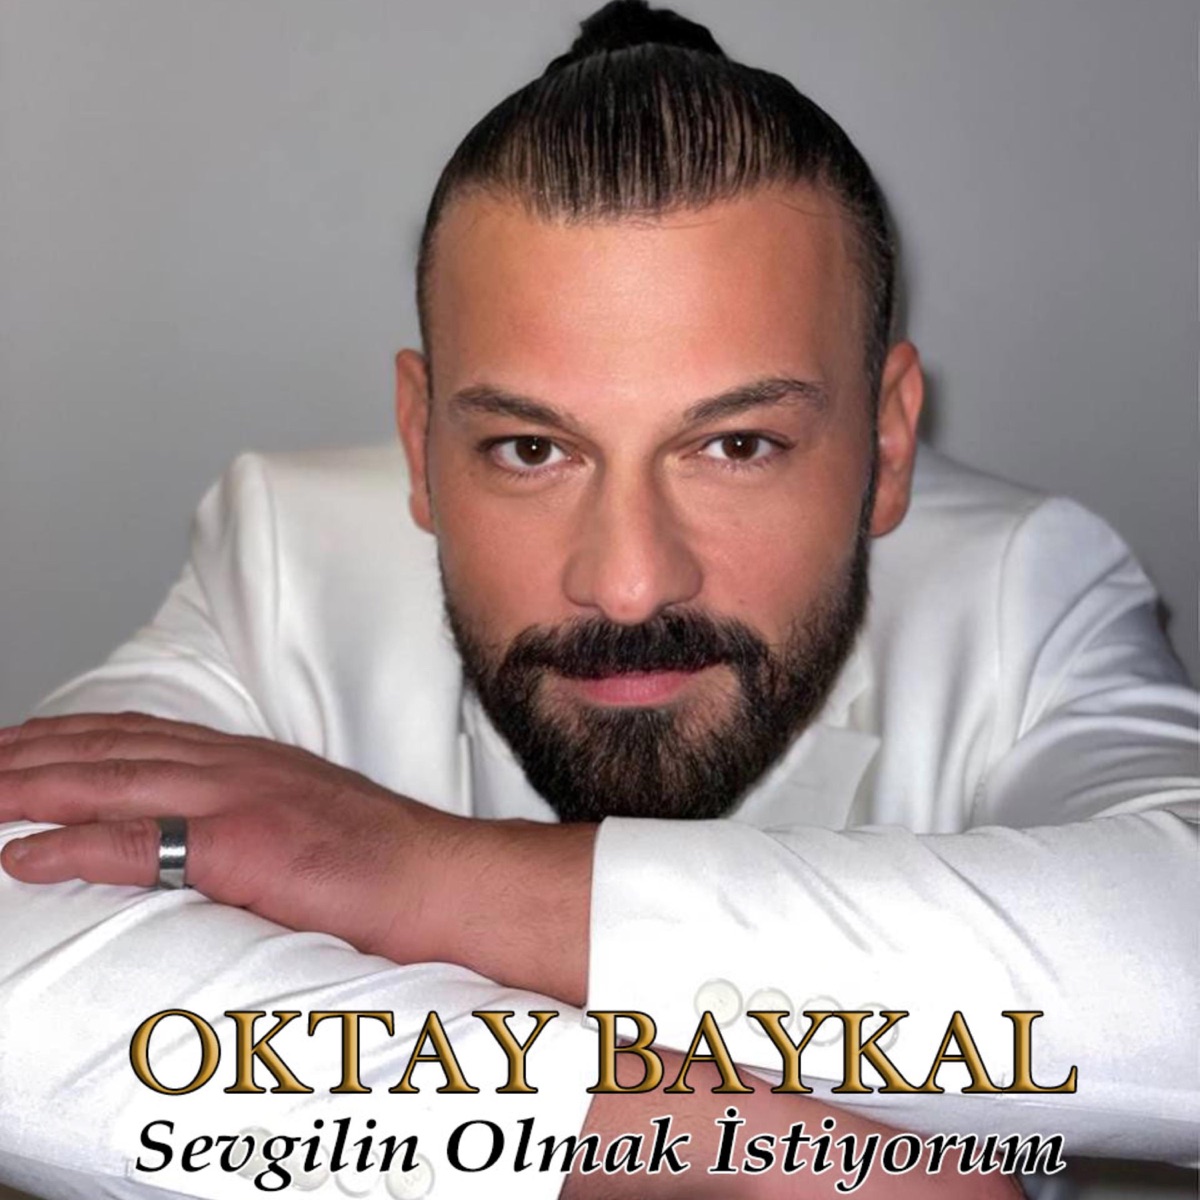 Yalniz Beni Sev - Single - Album by Oktay Baykal & Kader - Apple Music